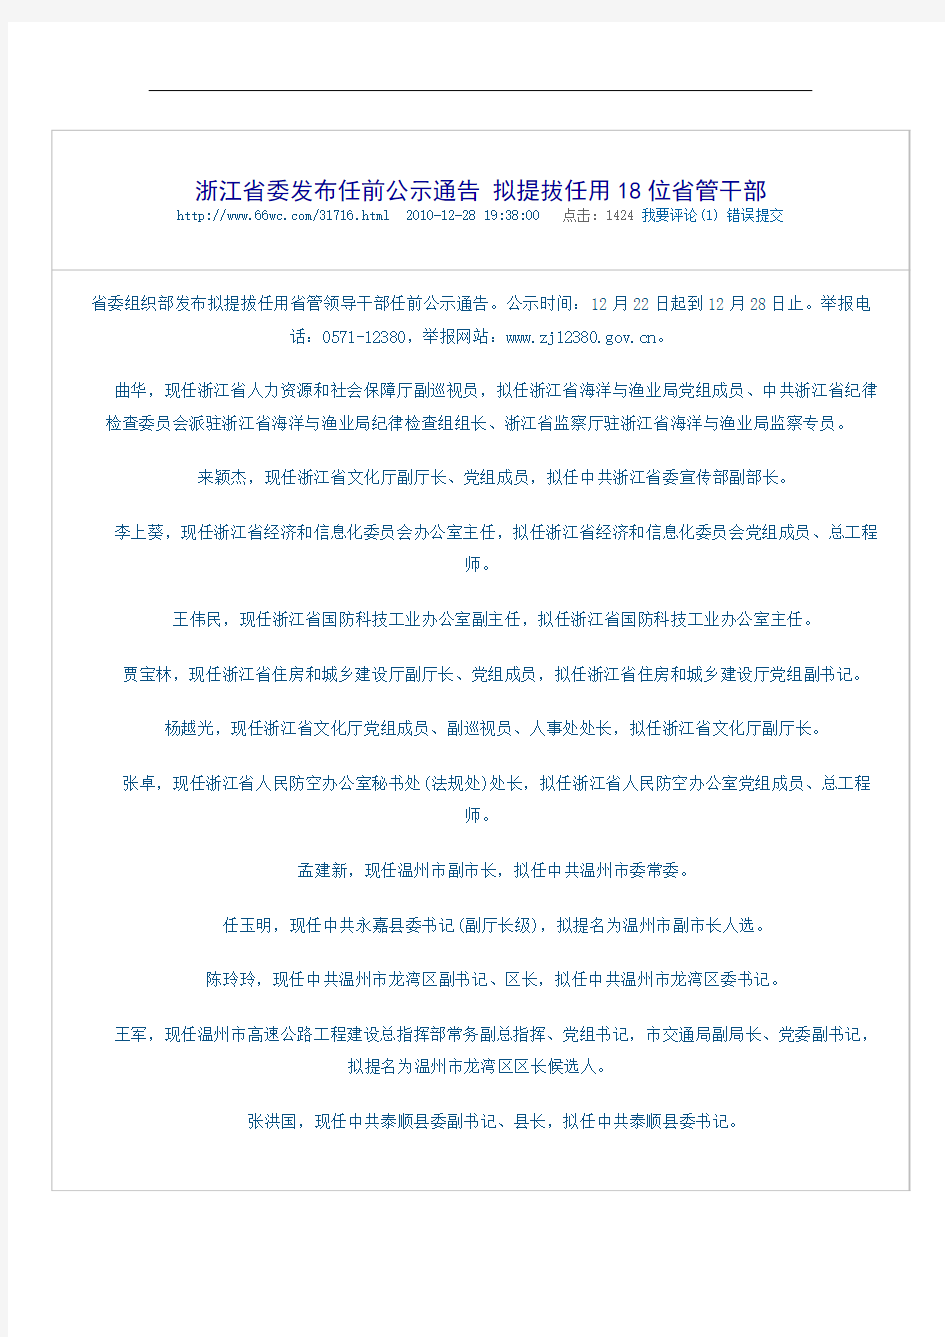 浙江省委发布任前公示通告 拟提拔任用18位省管干部